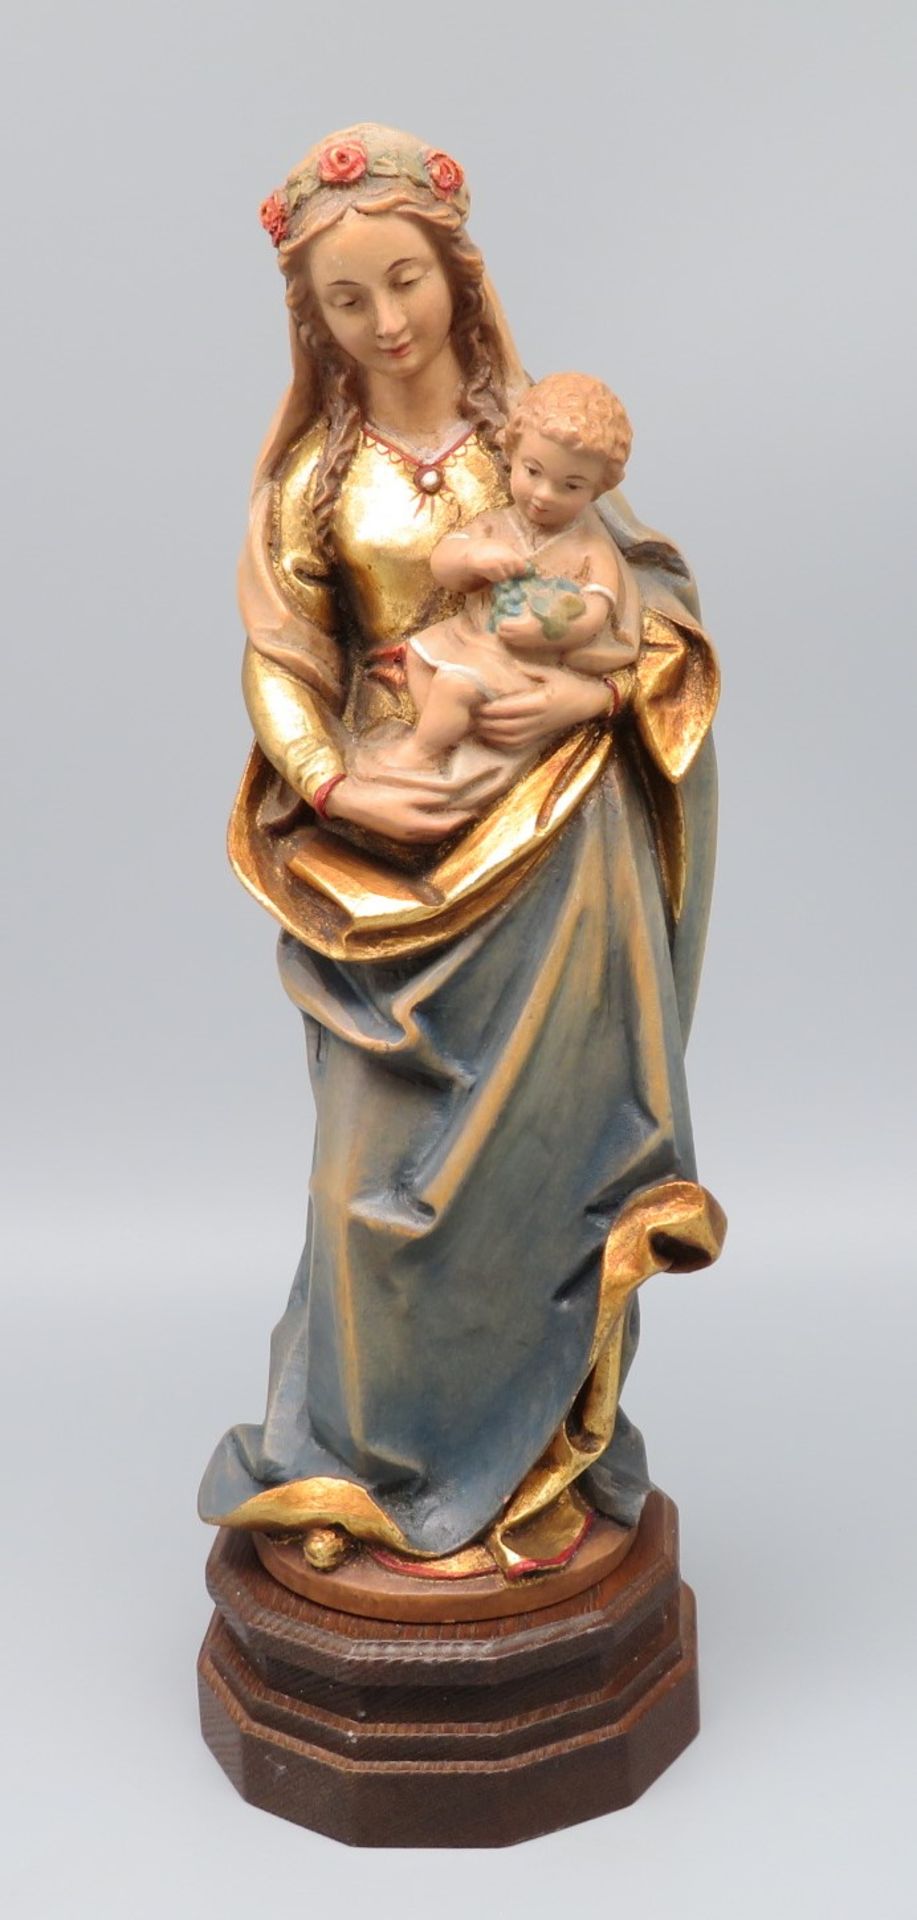 Stehende Madonna mit Kind, Holz geschnitzt, farbig gefasst und vergoldet, auf Sockel, 26,5 x 9 cm.